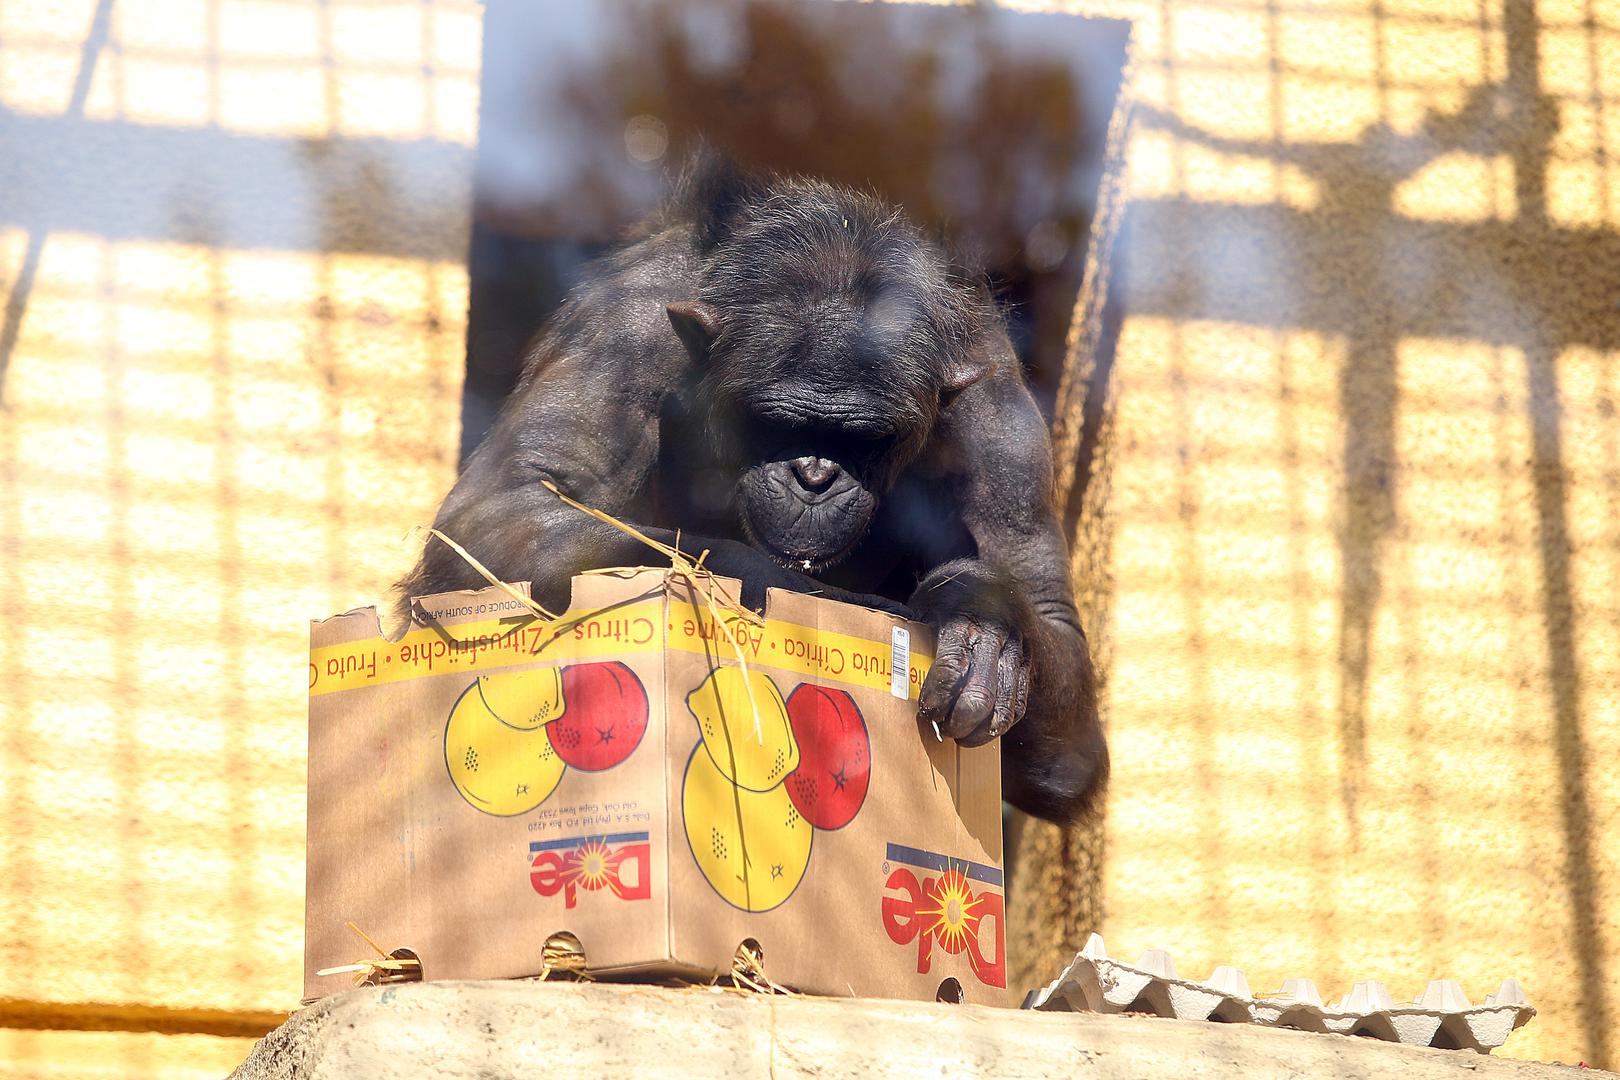 Čimpanza King slavi danas 20. rođendan u zagrebačkom Zoološkom vrtu, a djelatnici su slavljeniku pripremili proslavu iznenađenja i voćnu tortu. 